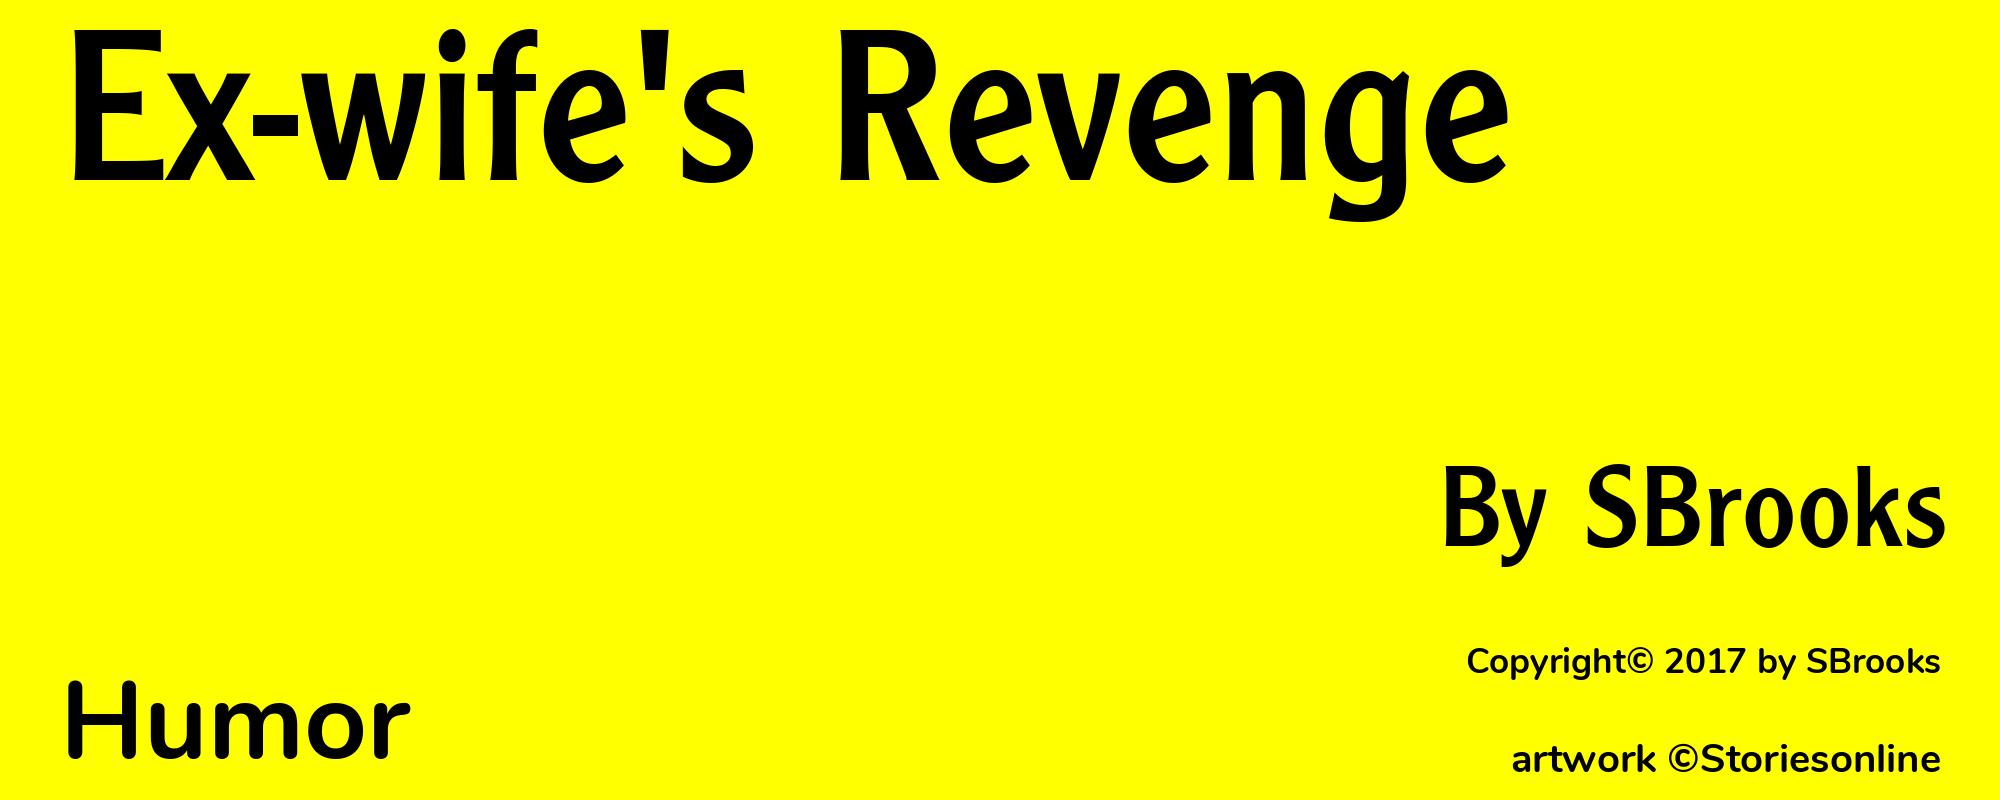 Ex-wife's Revenge - Cover